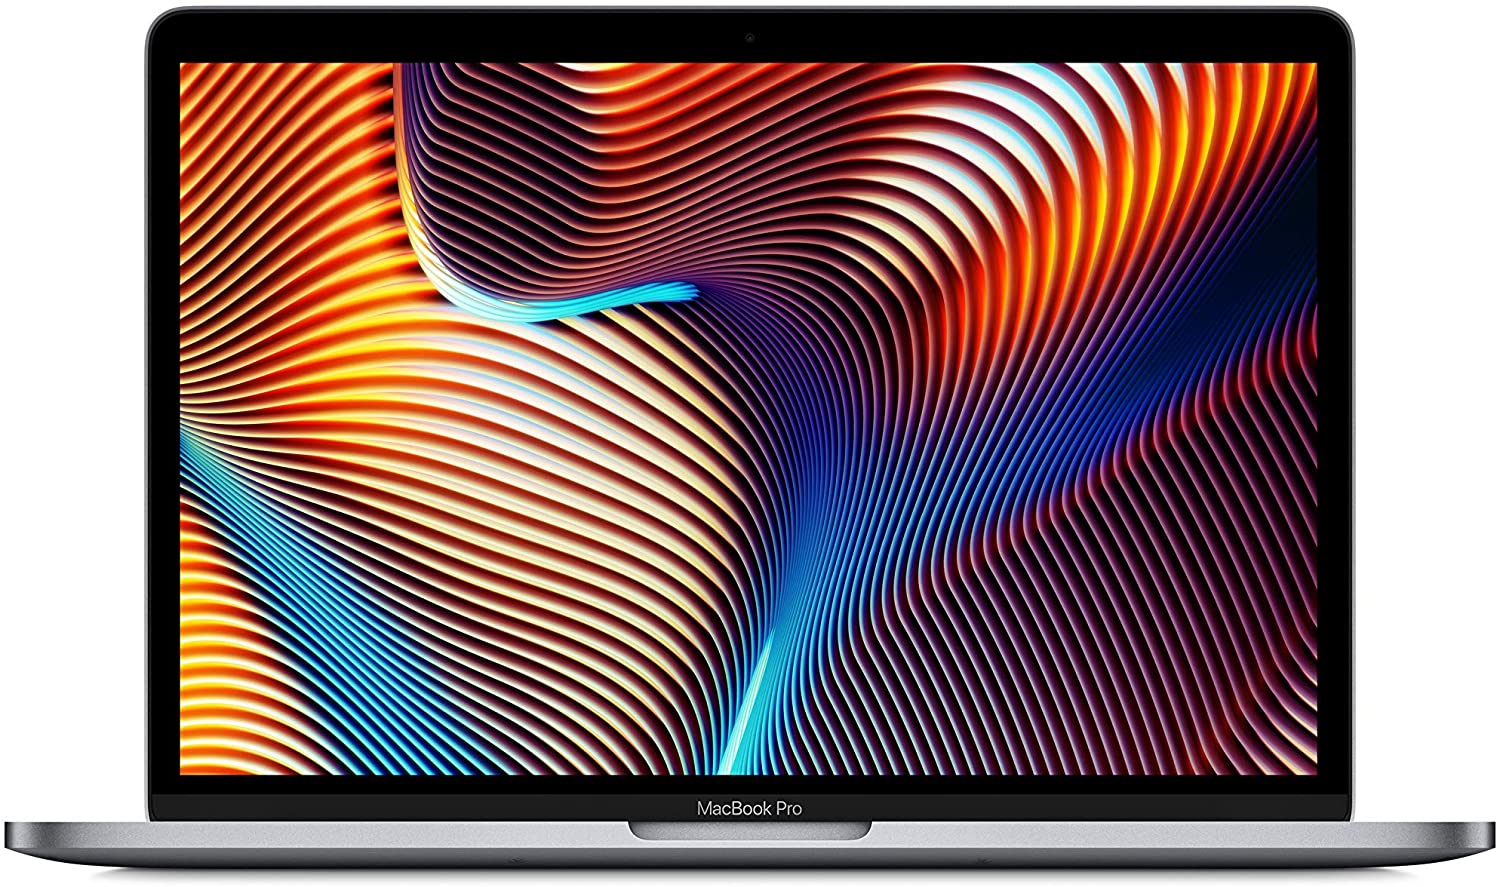 終了】MacBook Pro 13インチ (Mid 2019)がタイムセール特価で販売中 